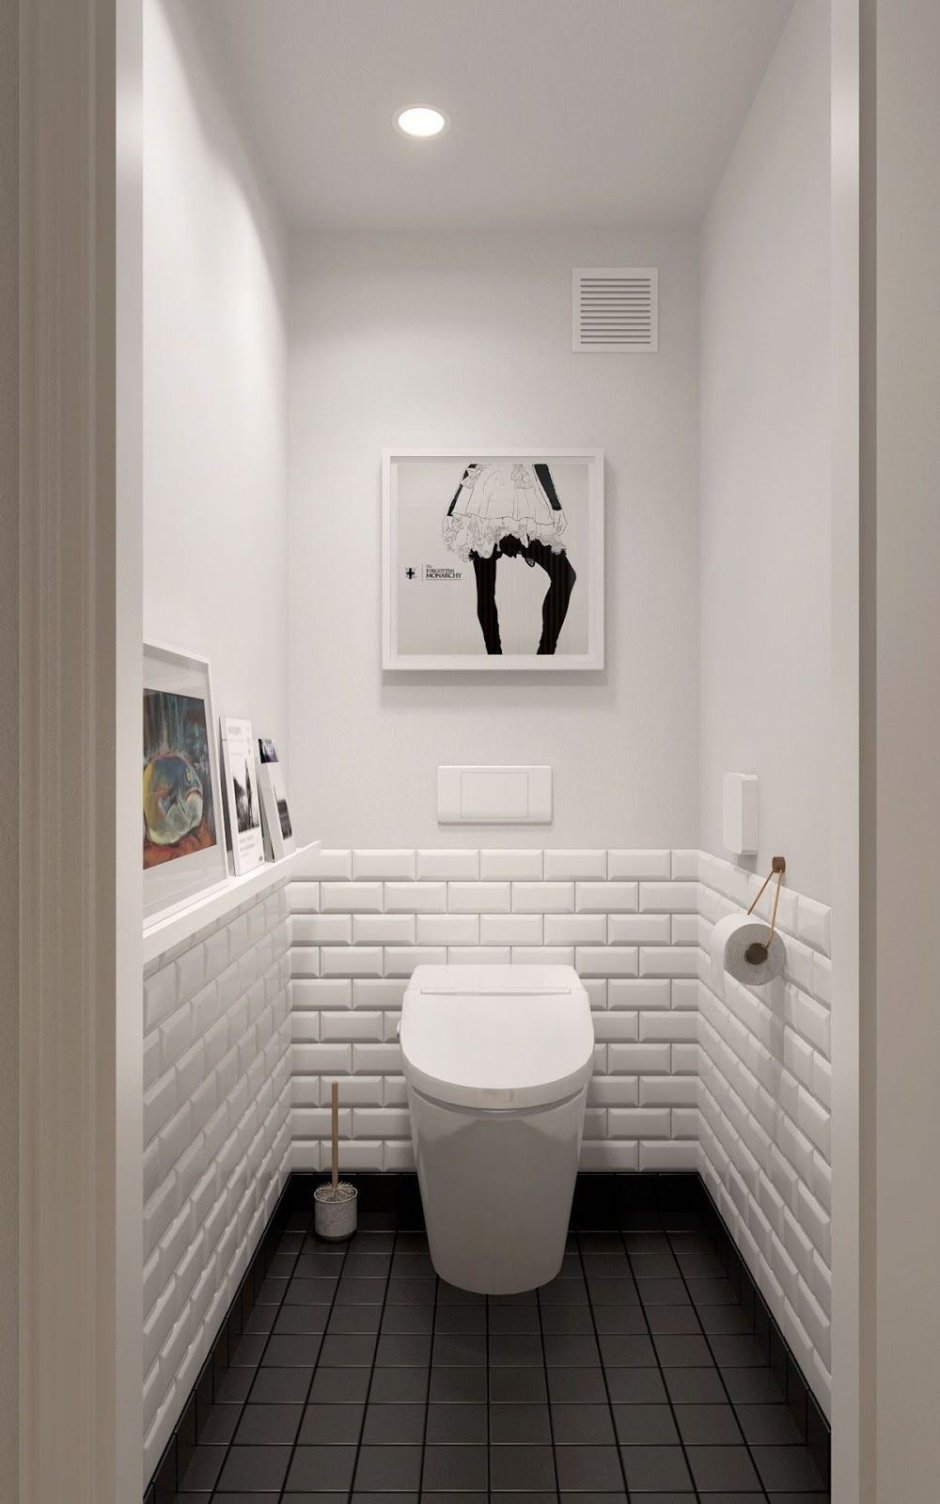 Дизайнерская отделка туалета